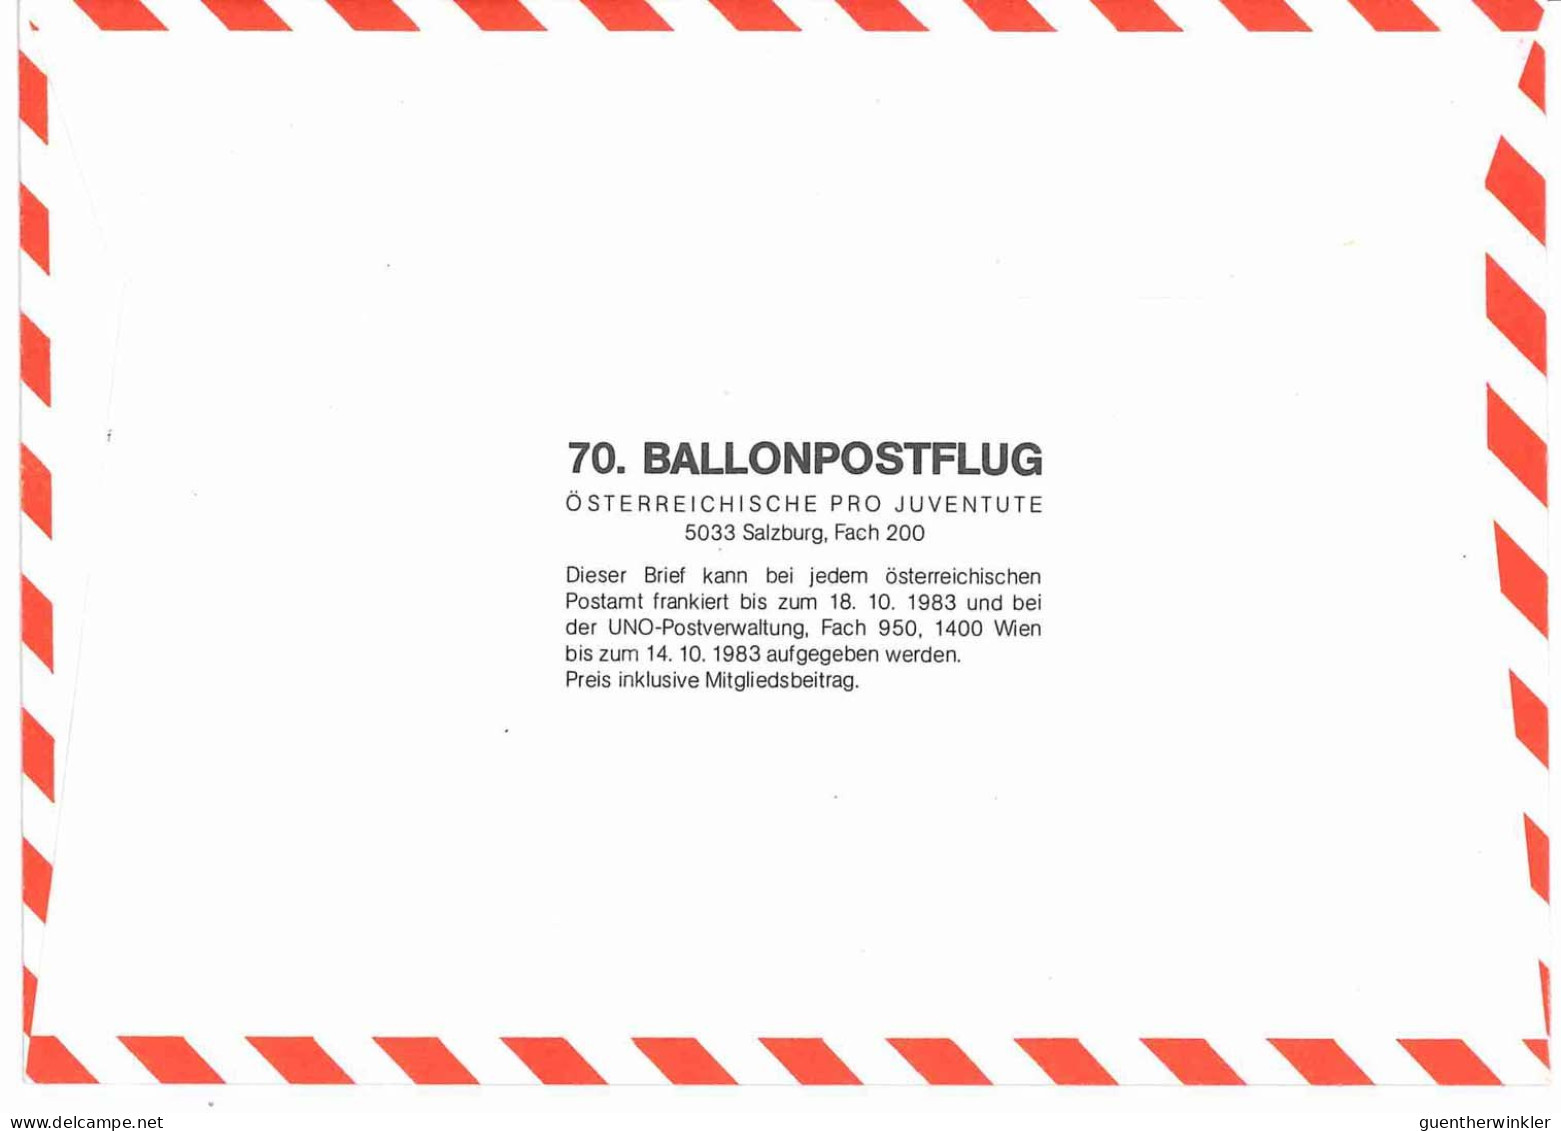 Regulärer Ballonpostflug Nr. 70a Der Pro Juventute [RBP70a] - Balloon Covers